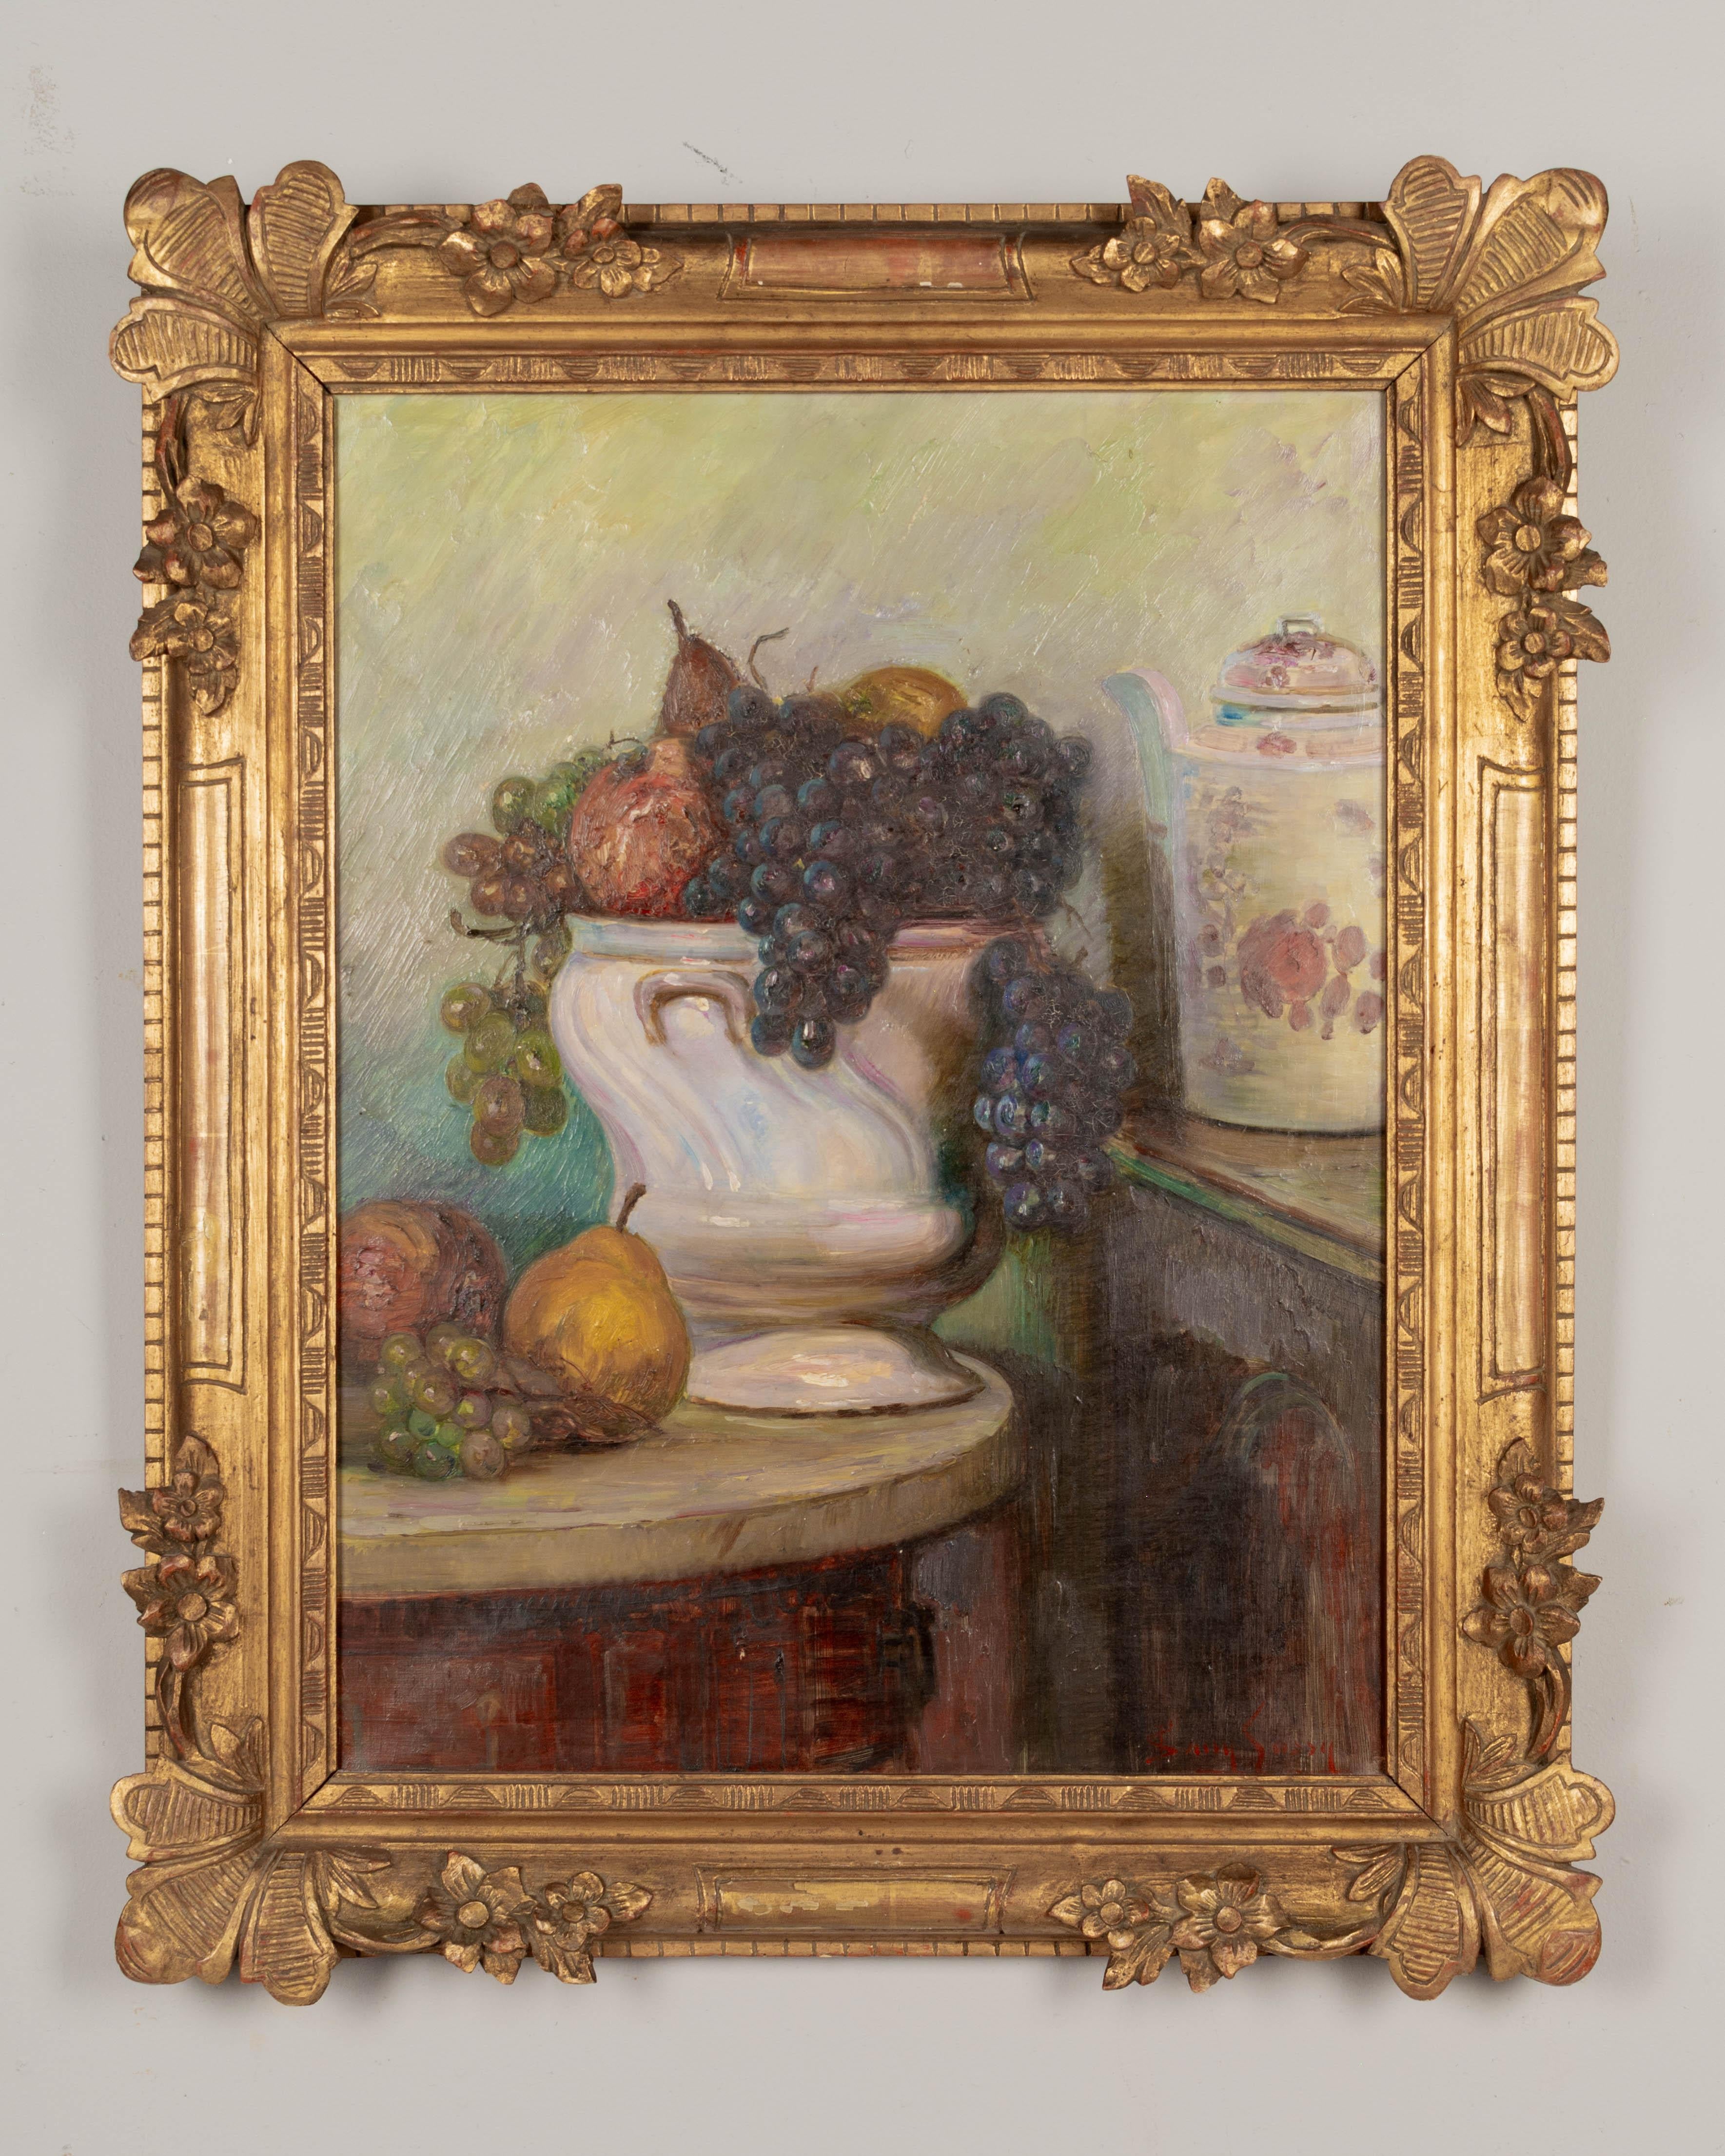 Nature morte de style impressionniste français représentant une grande coupe de fruits en porcelaine avec des raisins violets et verts, des poires et des pommes. Huile sur toile. Signé en bas à droite : Sany Sassy.  Cadre original en bois sculpté et